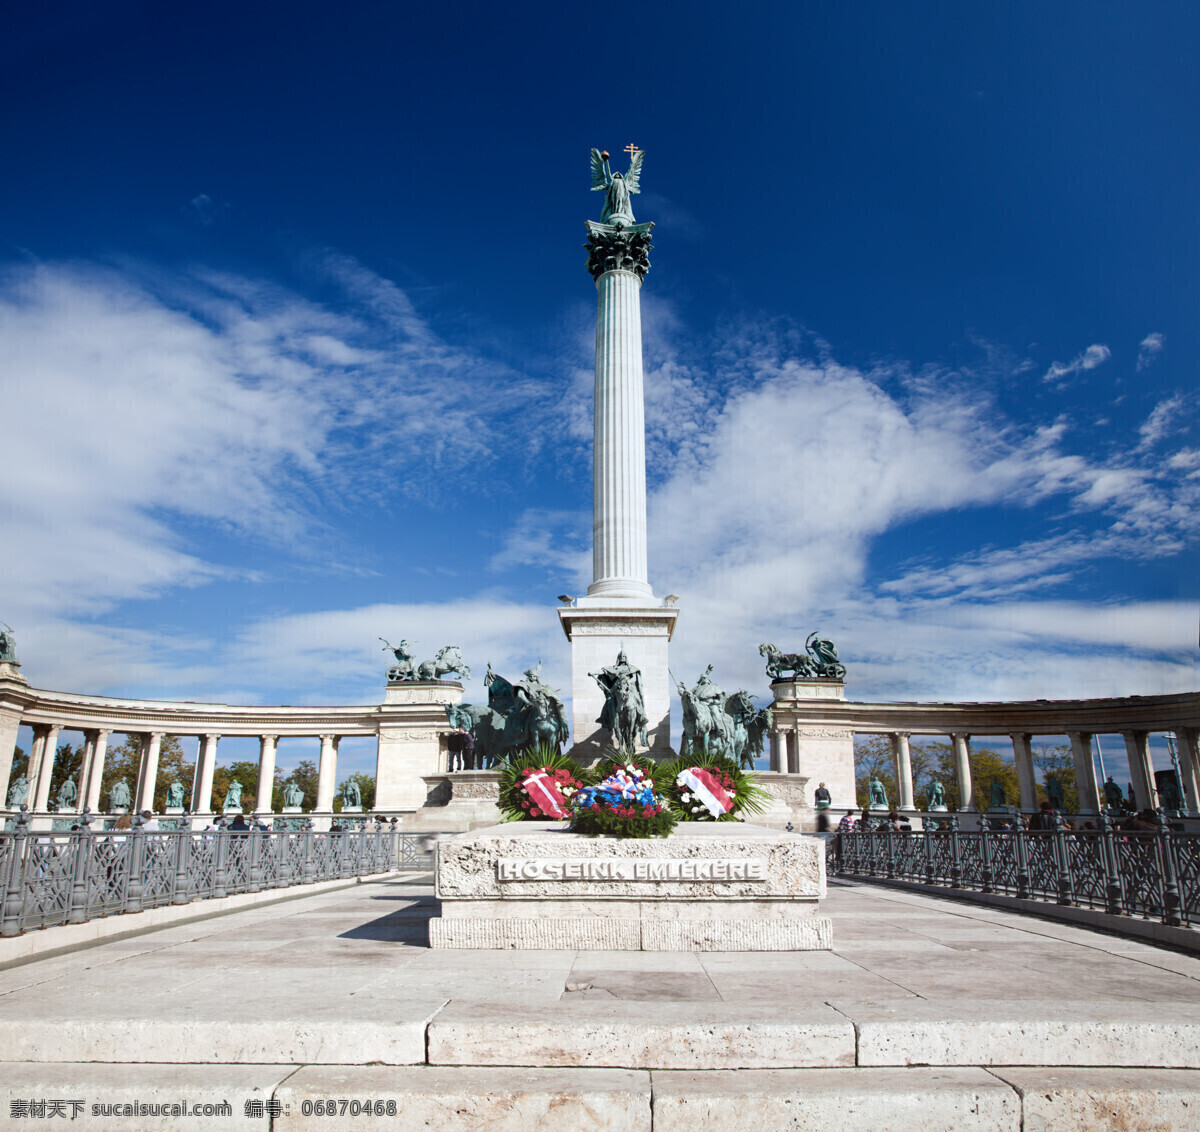 布达佩斯 英雄 广场 建筑 英雄广场 蓝天白云 城市风光 环境家居 蓝色